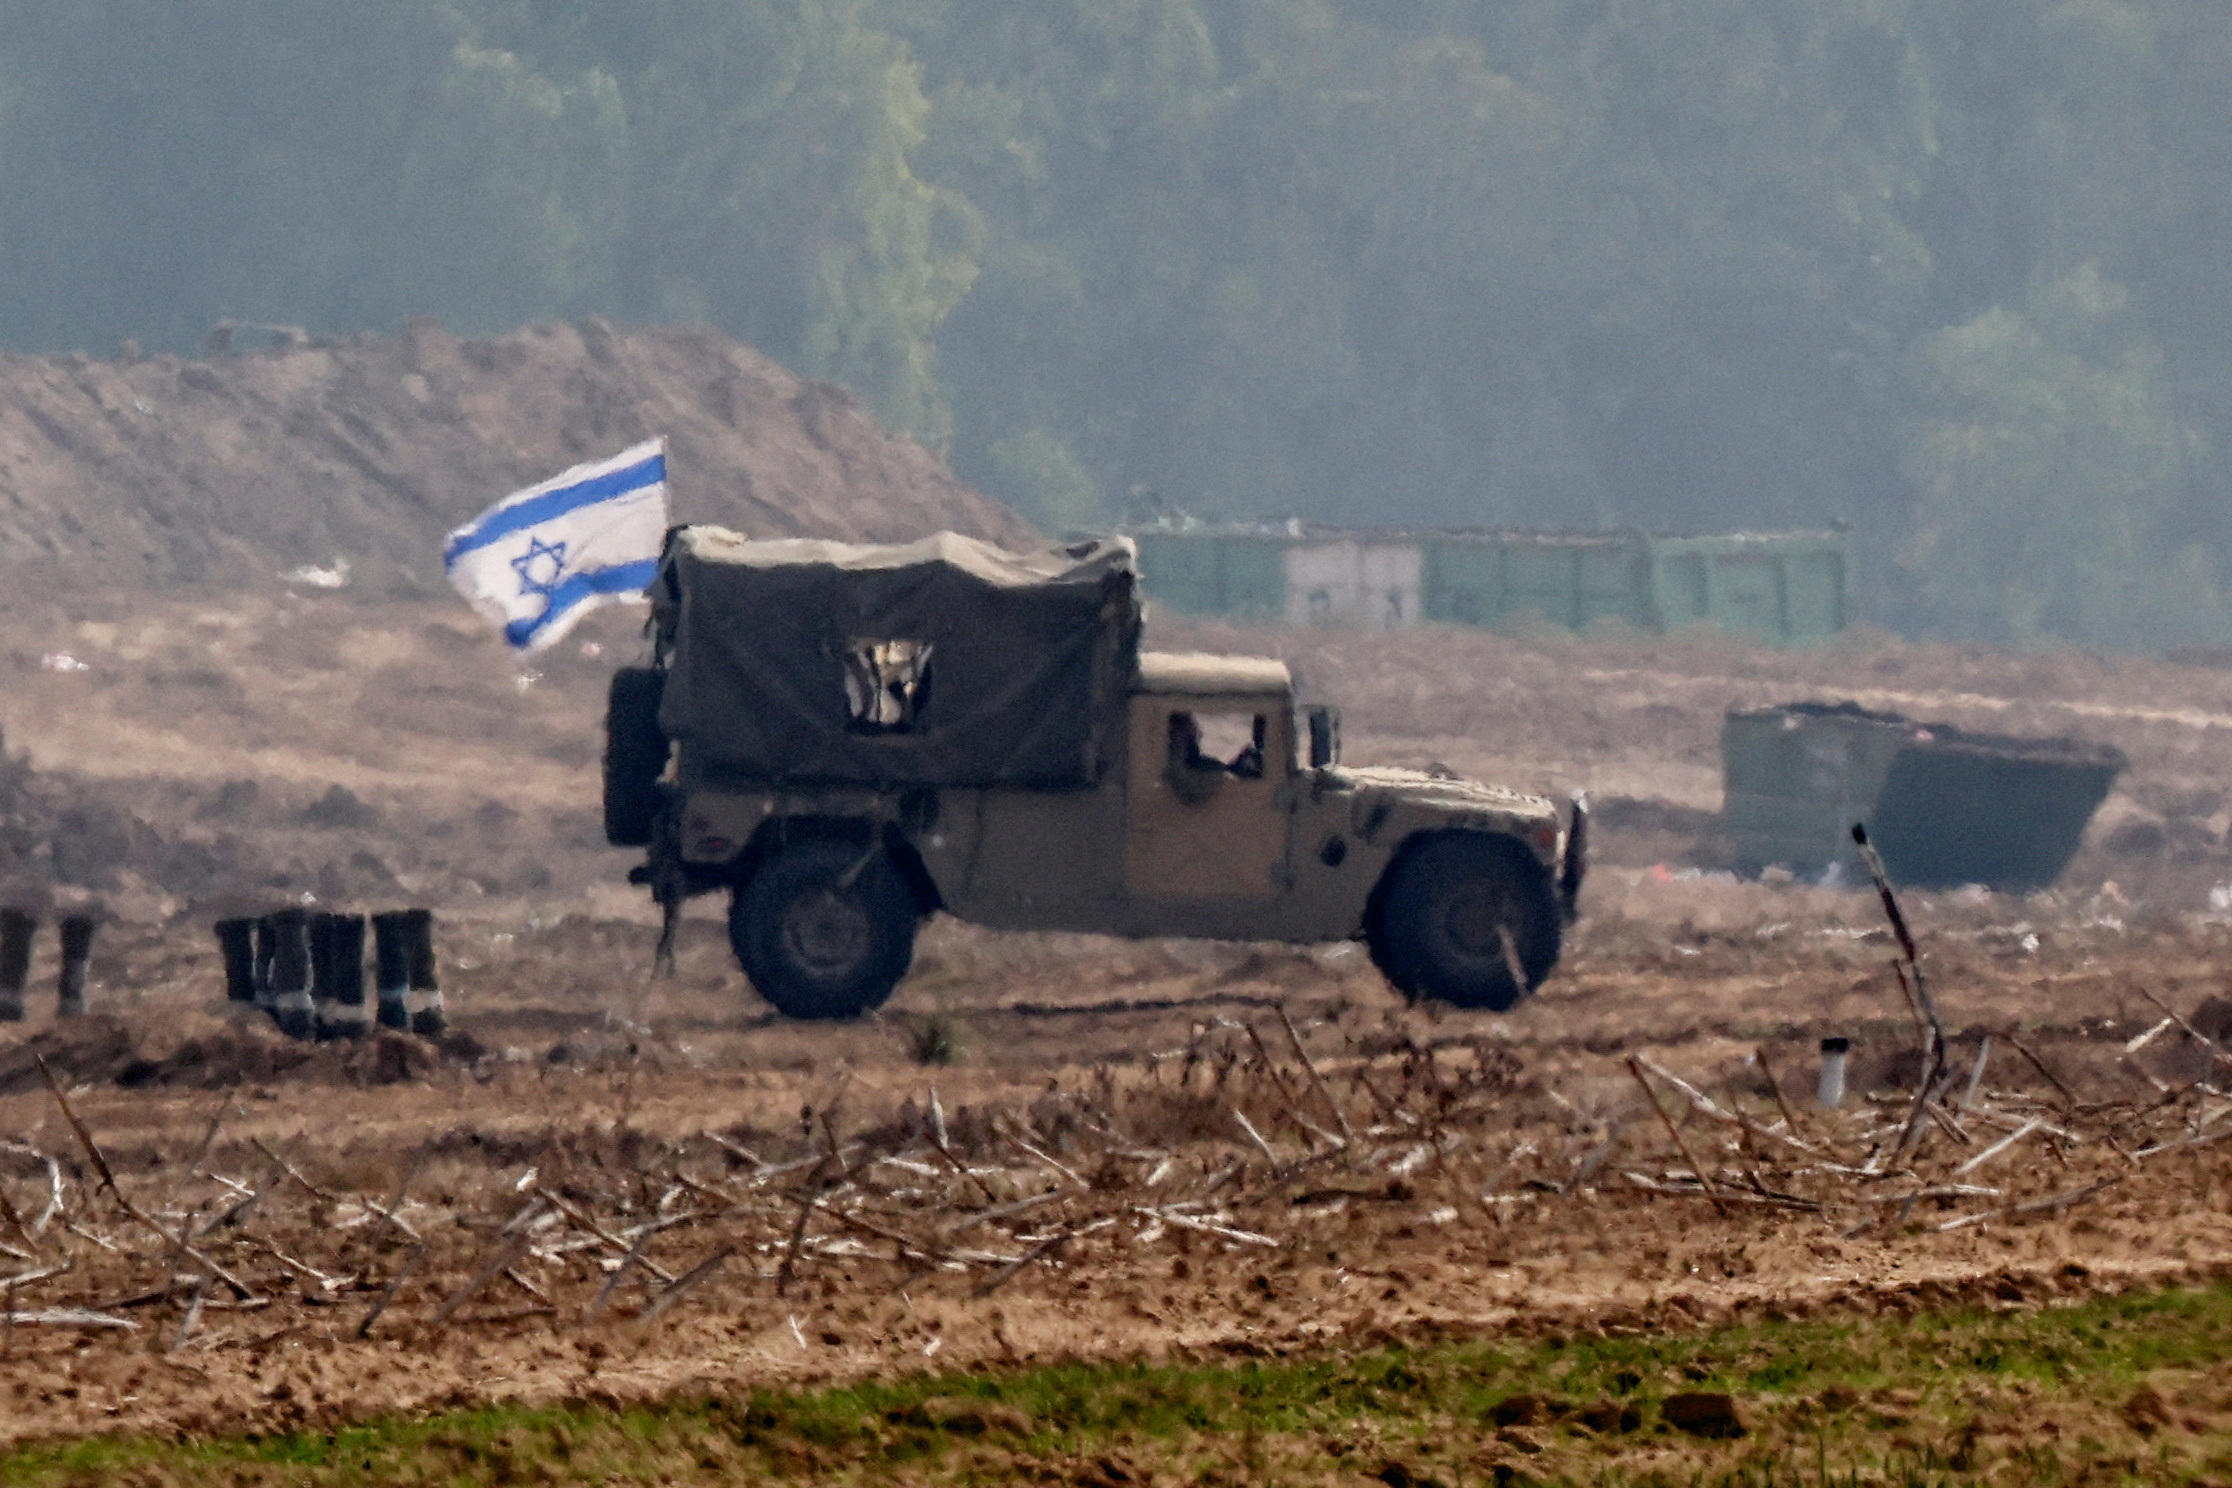 Un véhicule militaire surmonté d'un drapeau israélien circule à la frontière entre la bande de Gaza et le territoire israélien ce mardi. REUTERS/Athit Perawongmetha